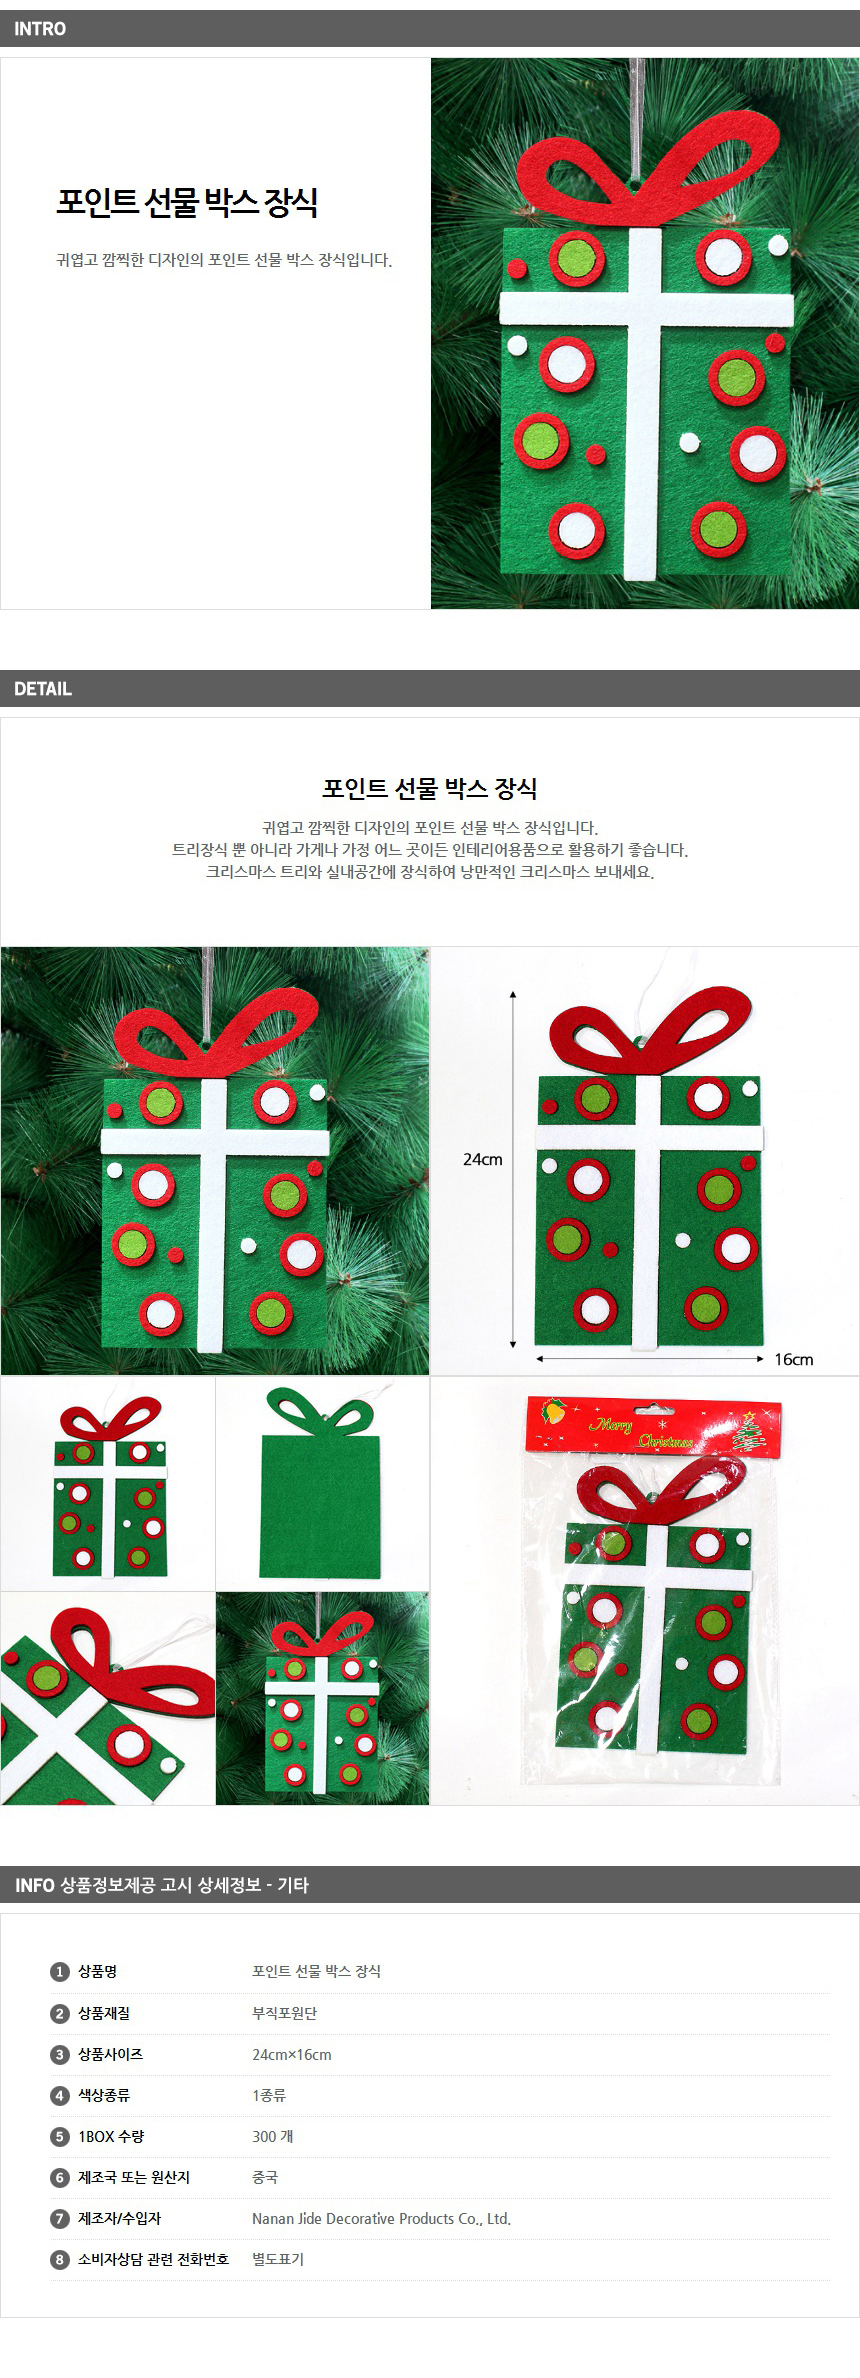 [크리스마스트리]포인트 선물 박스 장식(24cm 16cm)